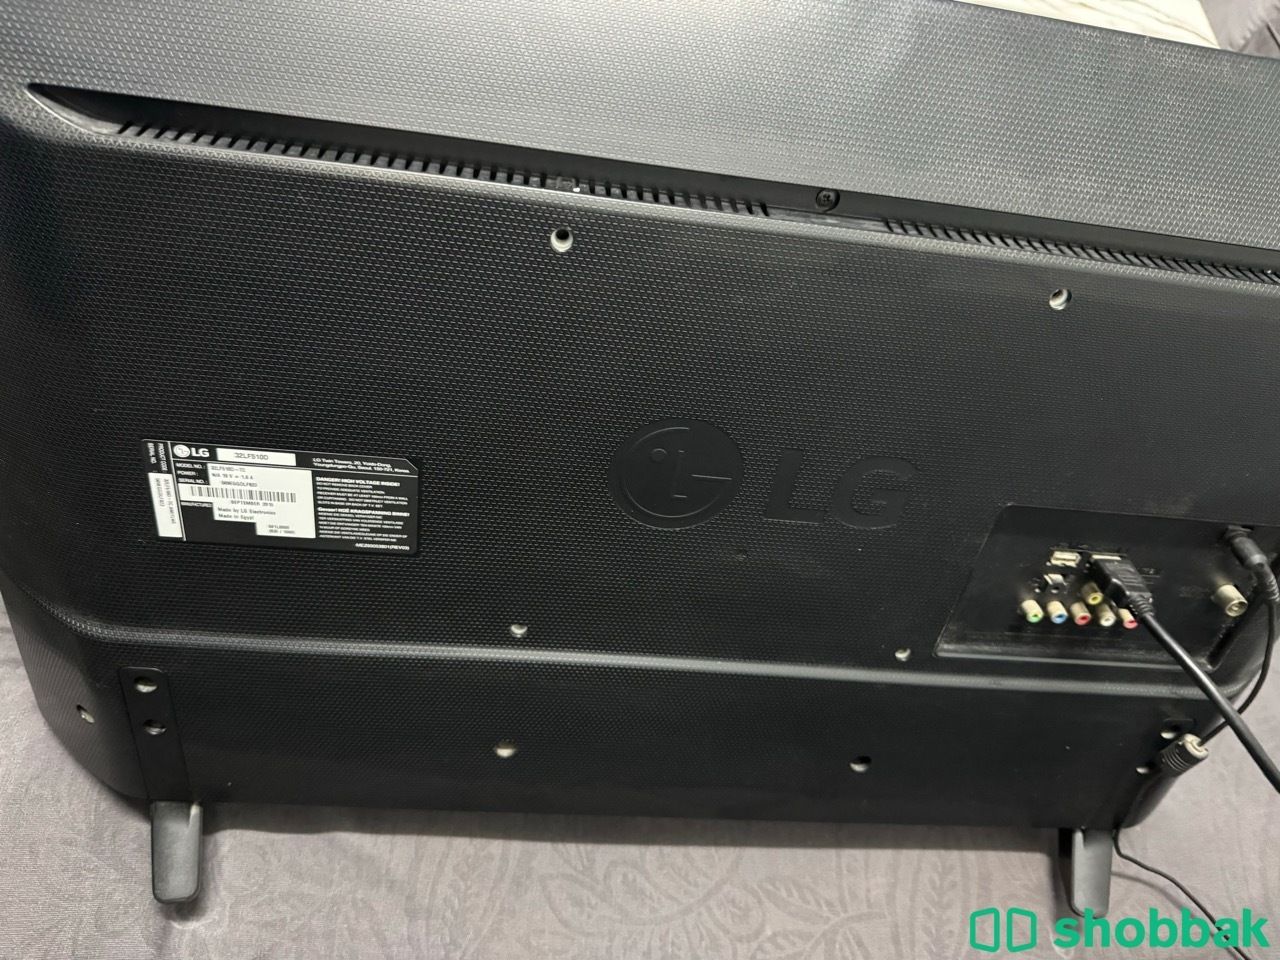 شاشه ال جي LG للبيع 32 بوصه مع سلك HDMI Shobbak Saudi Arabia